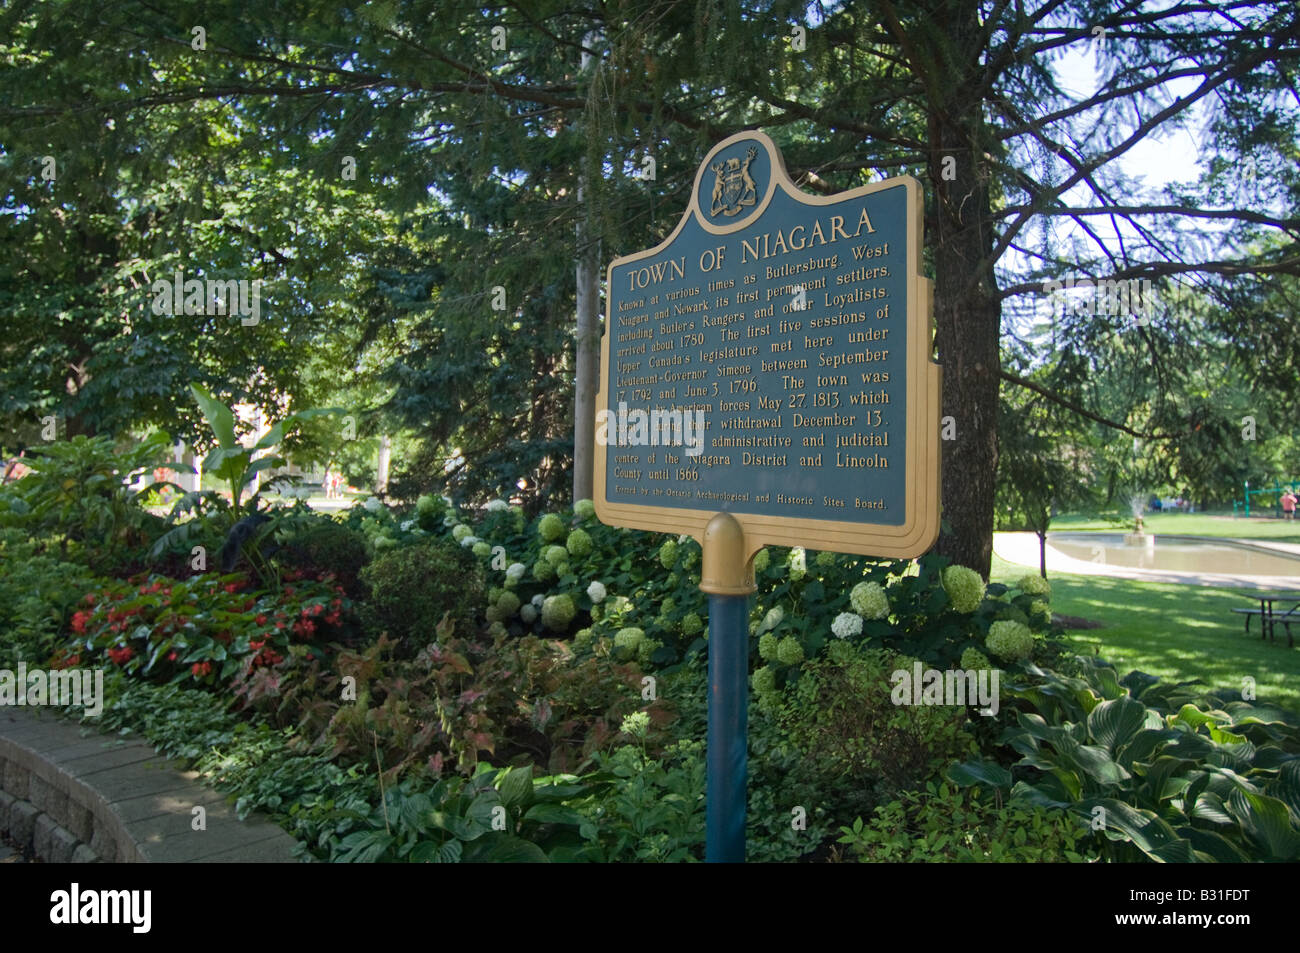 Eine Gedenktafel von der Ontario archäologischen und historischen Stätten Kammer platziert erinnert an eine Geschichte der Stadt von Niagara-on-the-Lake. Stockfoto